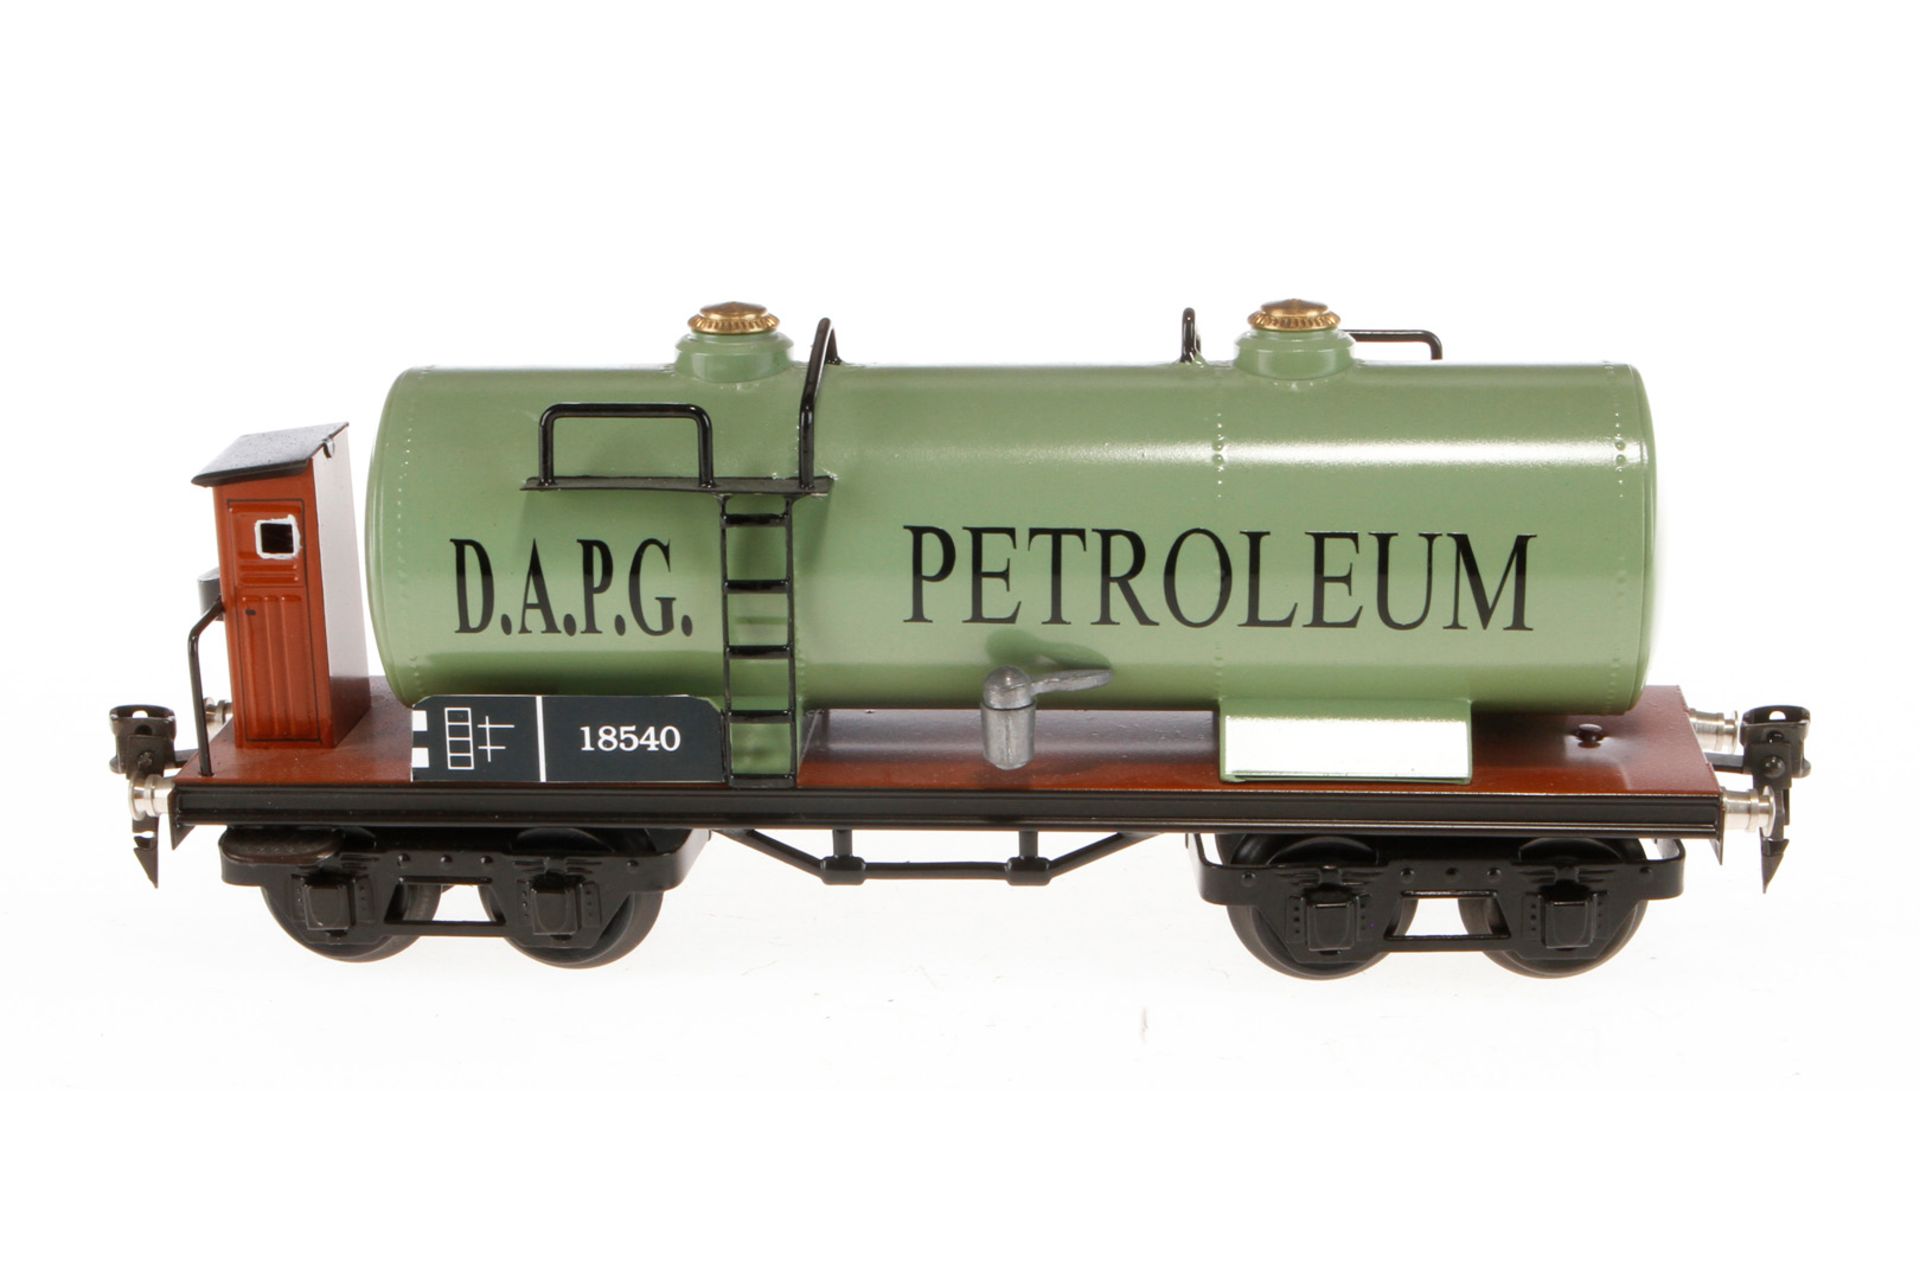 WD Petroleum Kesselwagen 1854, Spur 0, HL, mit BRH, kleine LS und leichte Alterungsspuren, L 24,5,